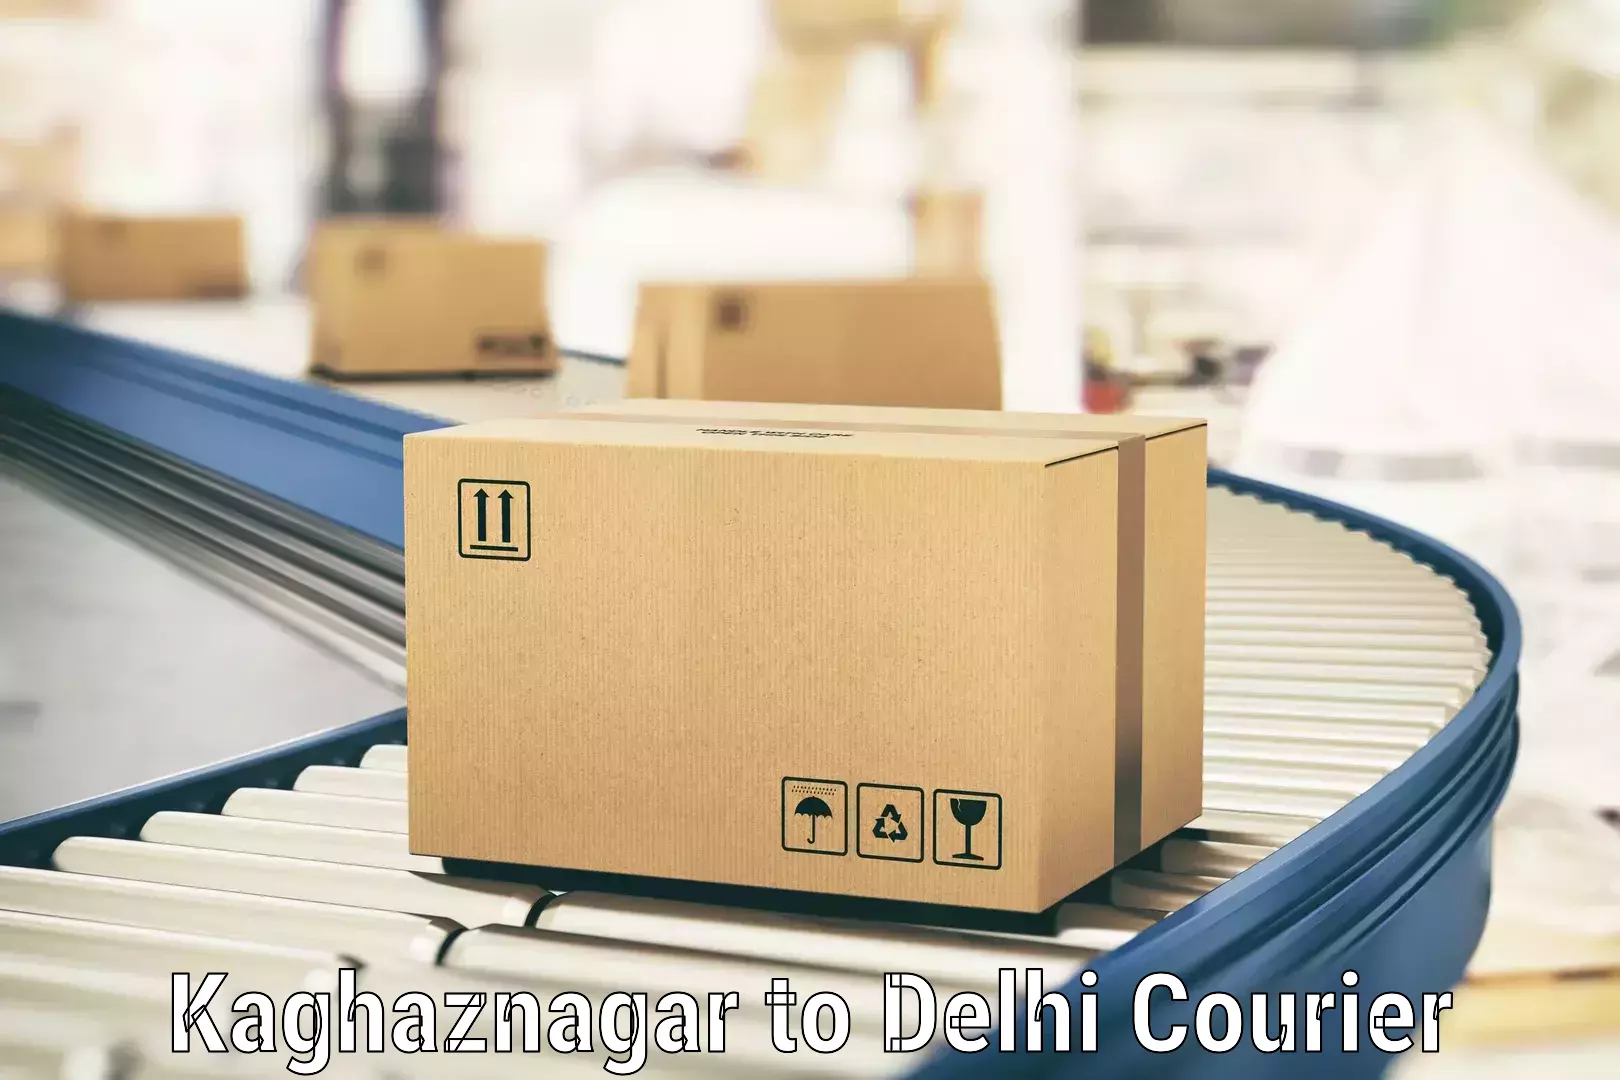 Door-to-door freight service Kaghaznagar to NIT Delhi